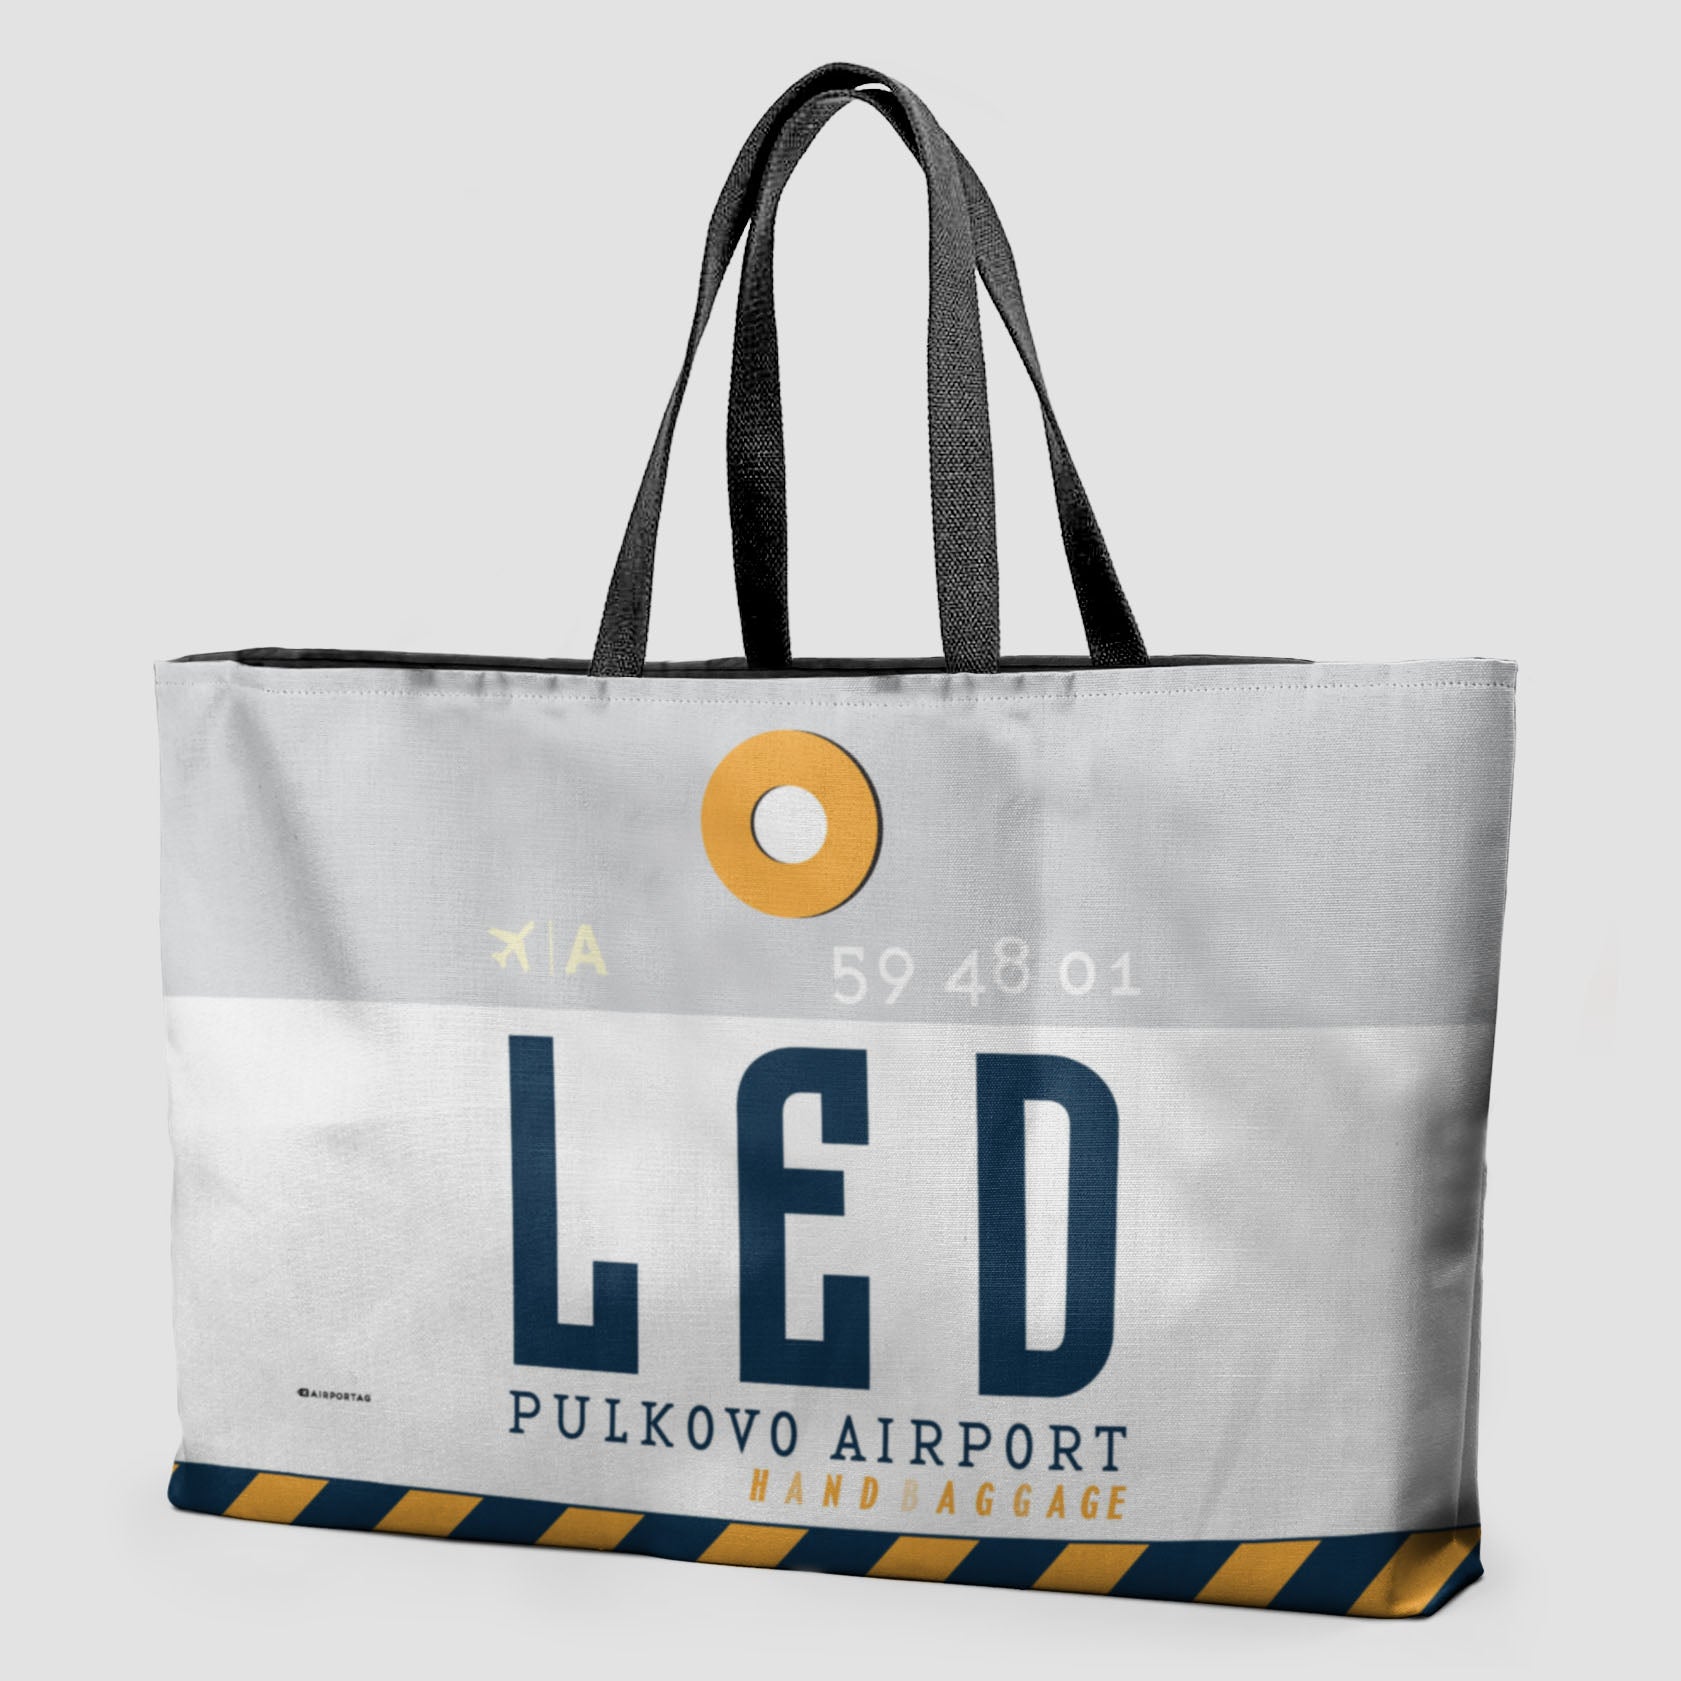 LED - Weekender Bag - Airportag